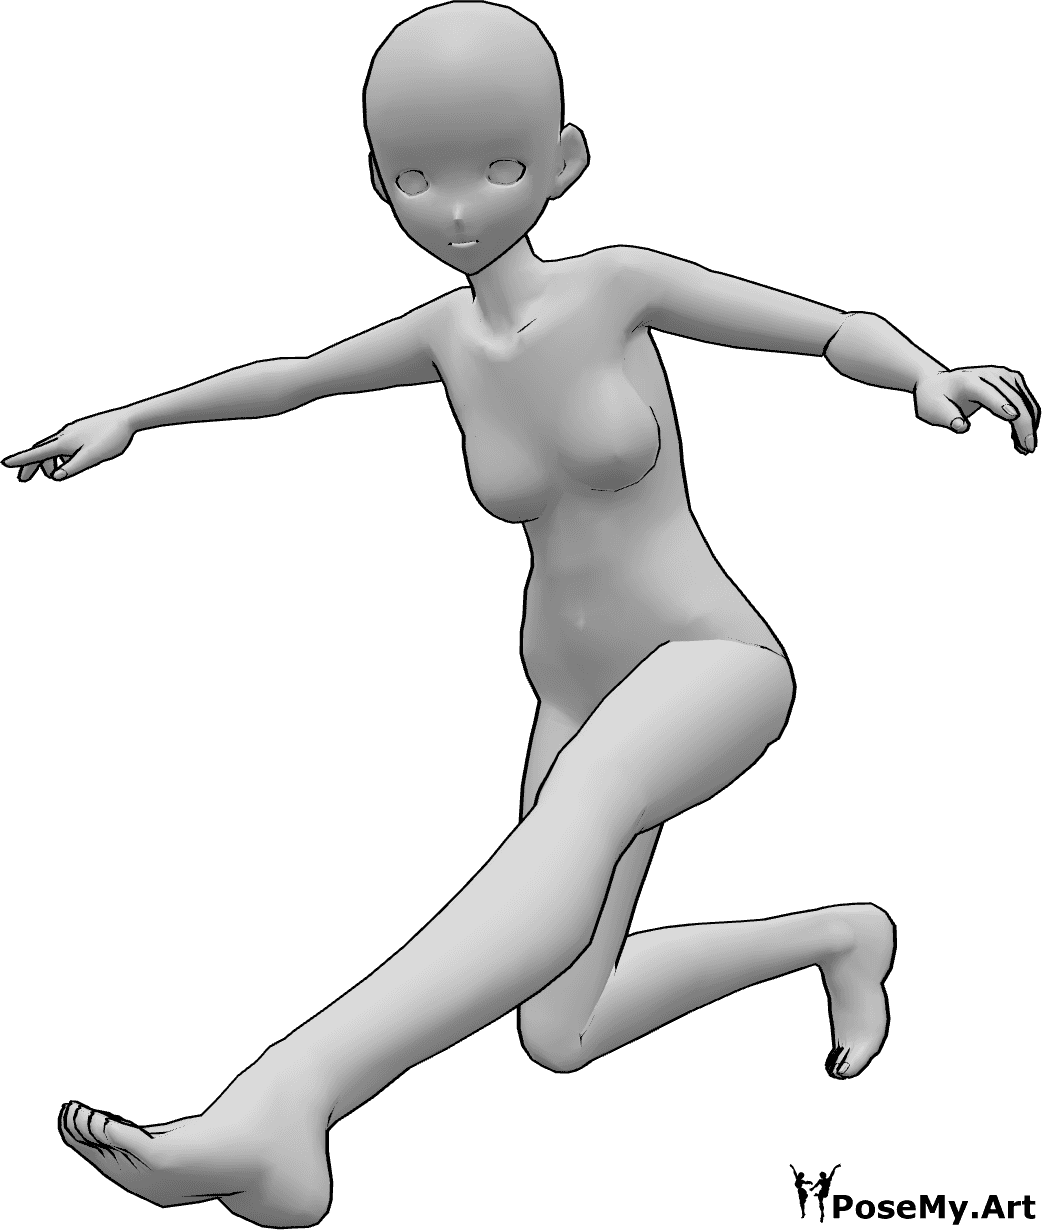 Referencia de poses- Postura dinámica de aterrizaje anime - Mujer anime está aterrizando, balanceándose con las manos y mirando hacia delante